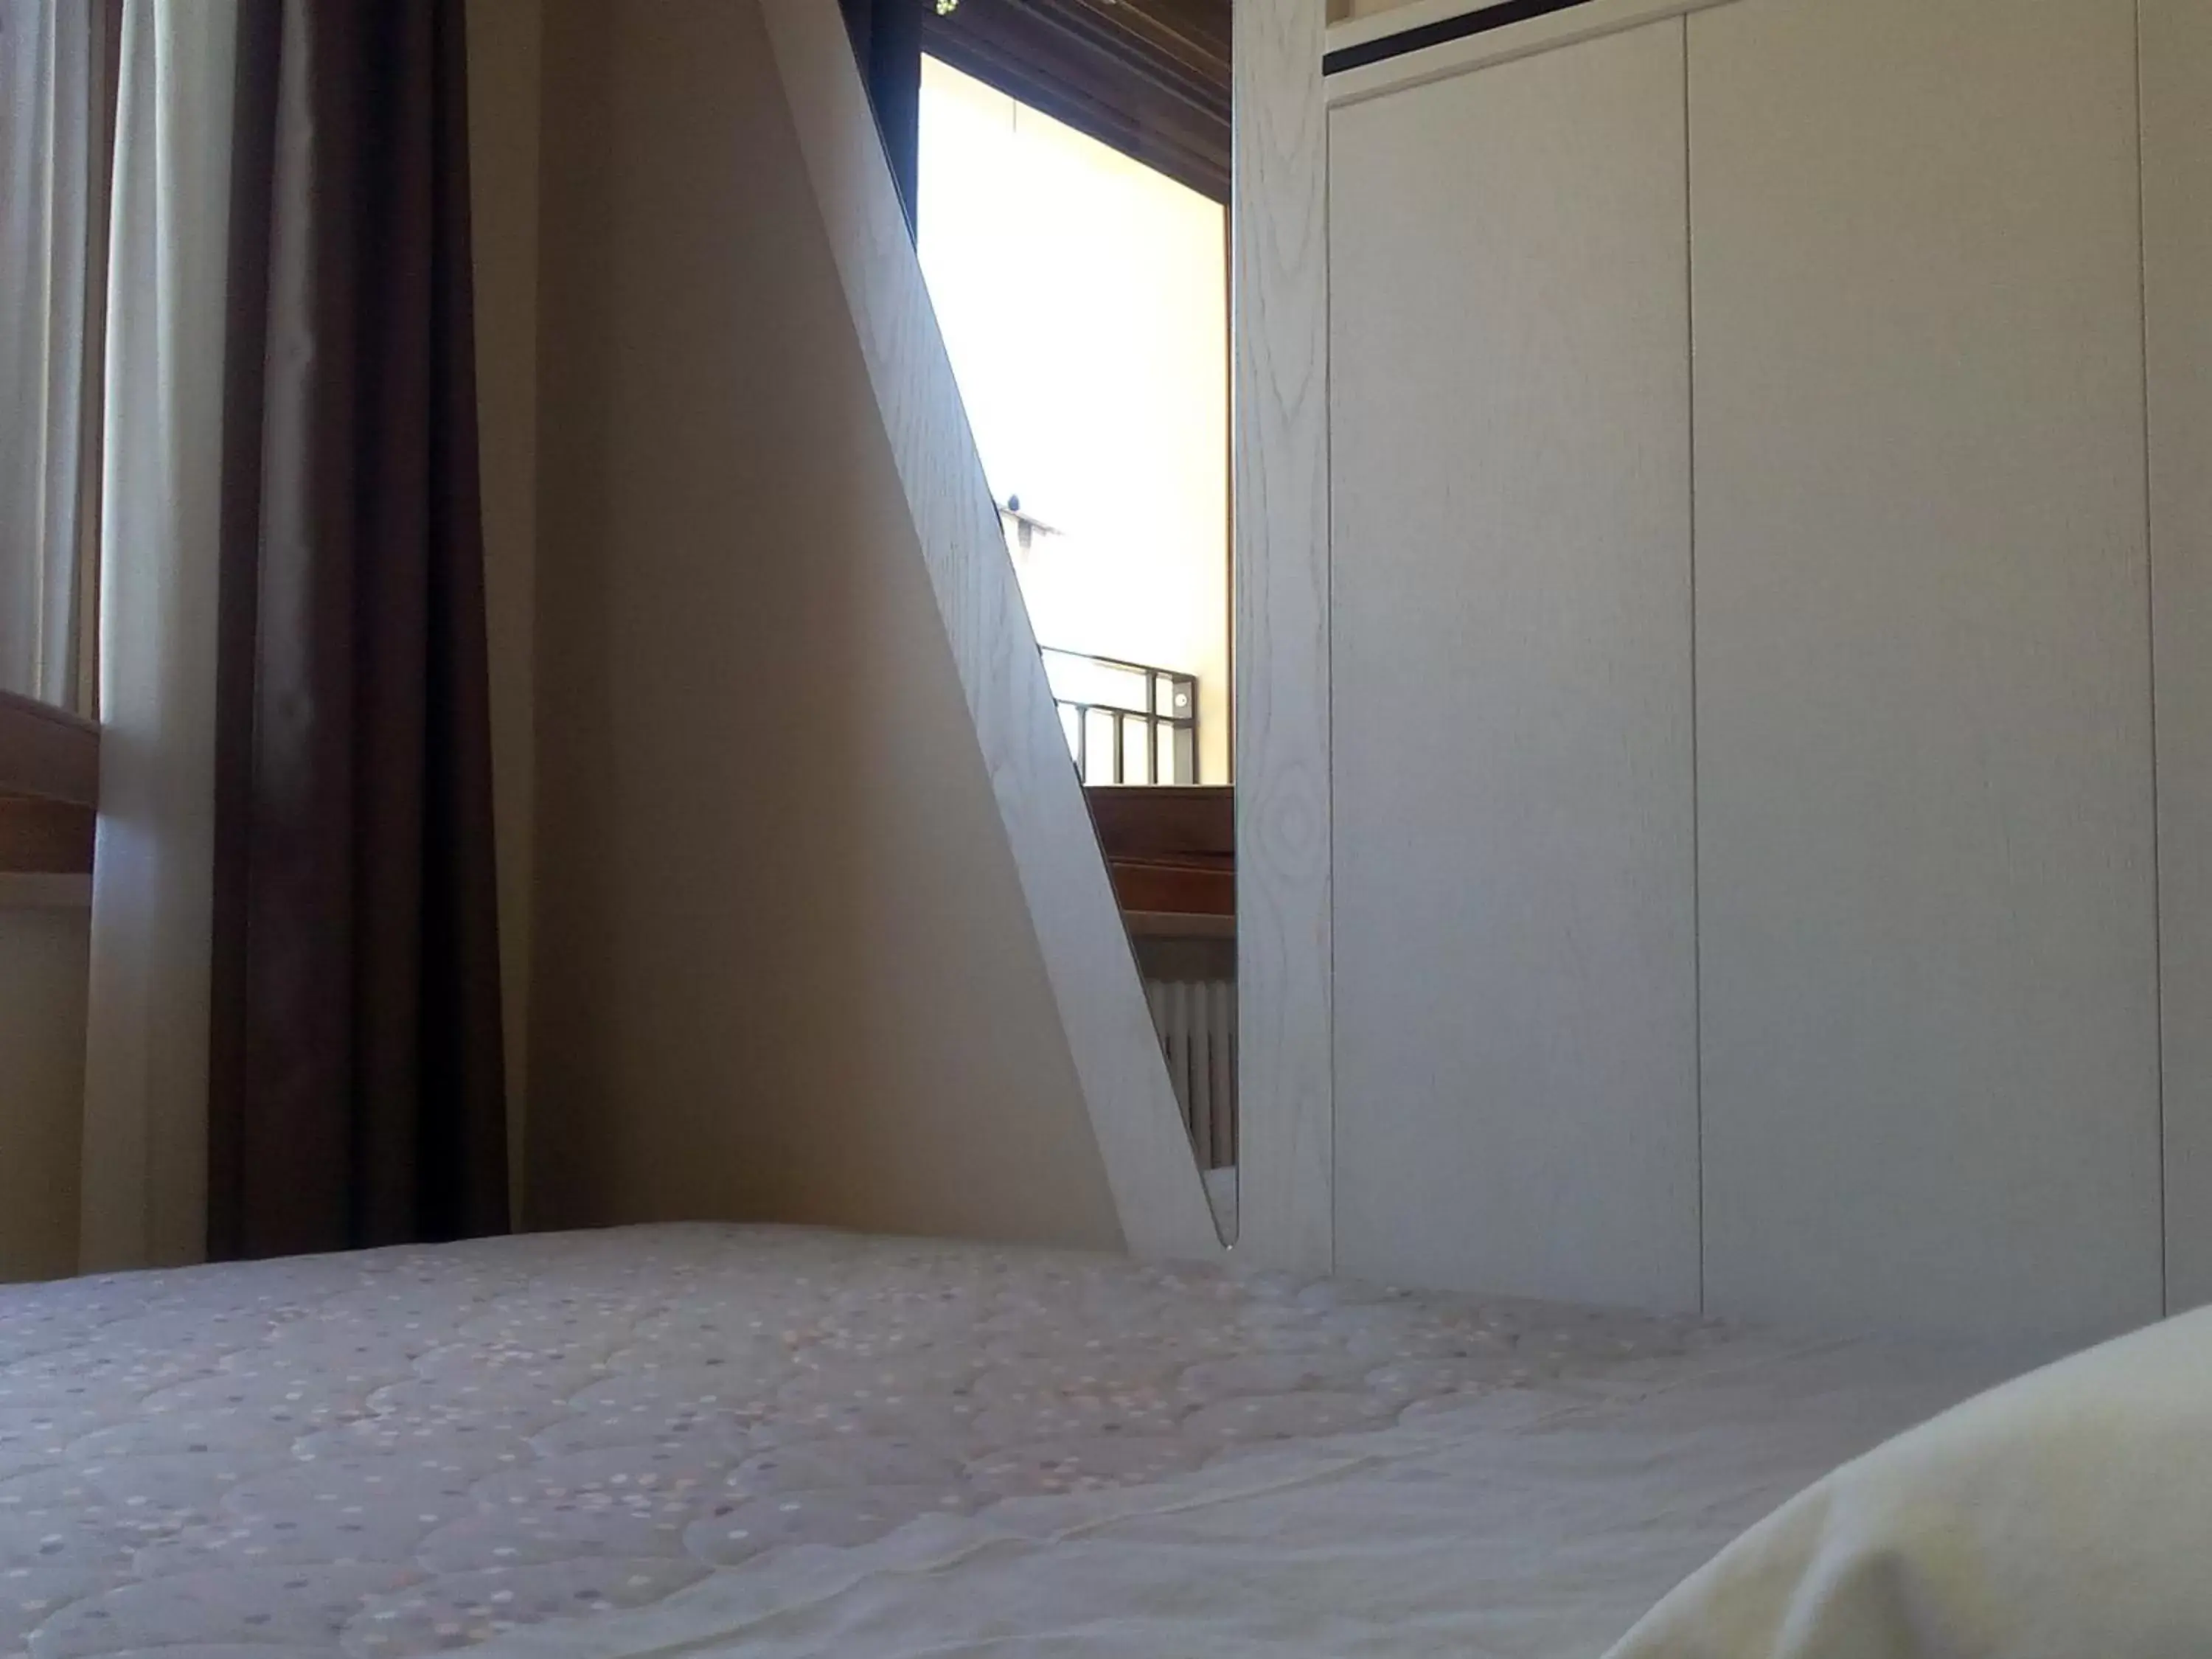 Single Room in Albergo Diffuso - Il Poggetto tra Urbino & San Marino